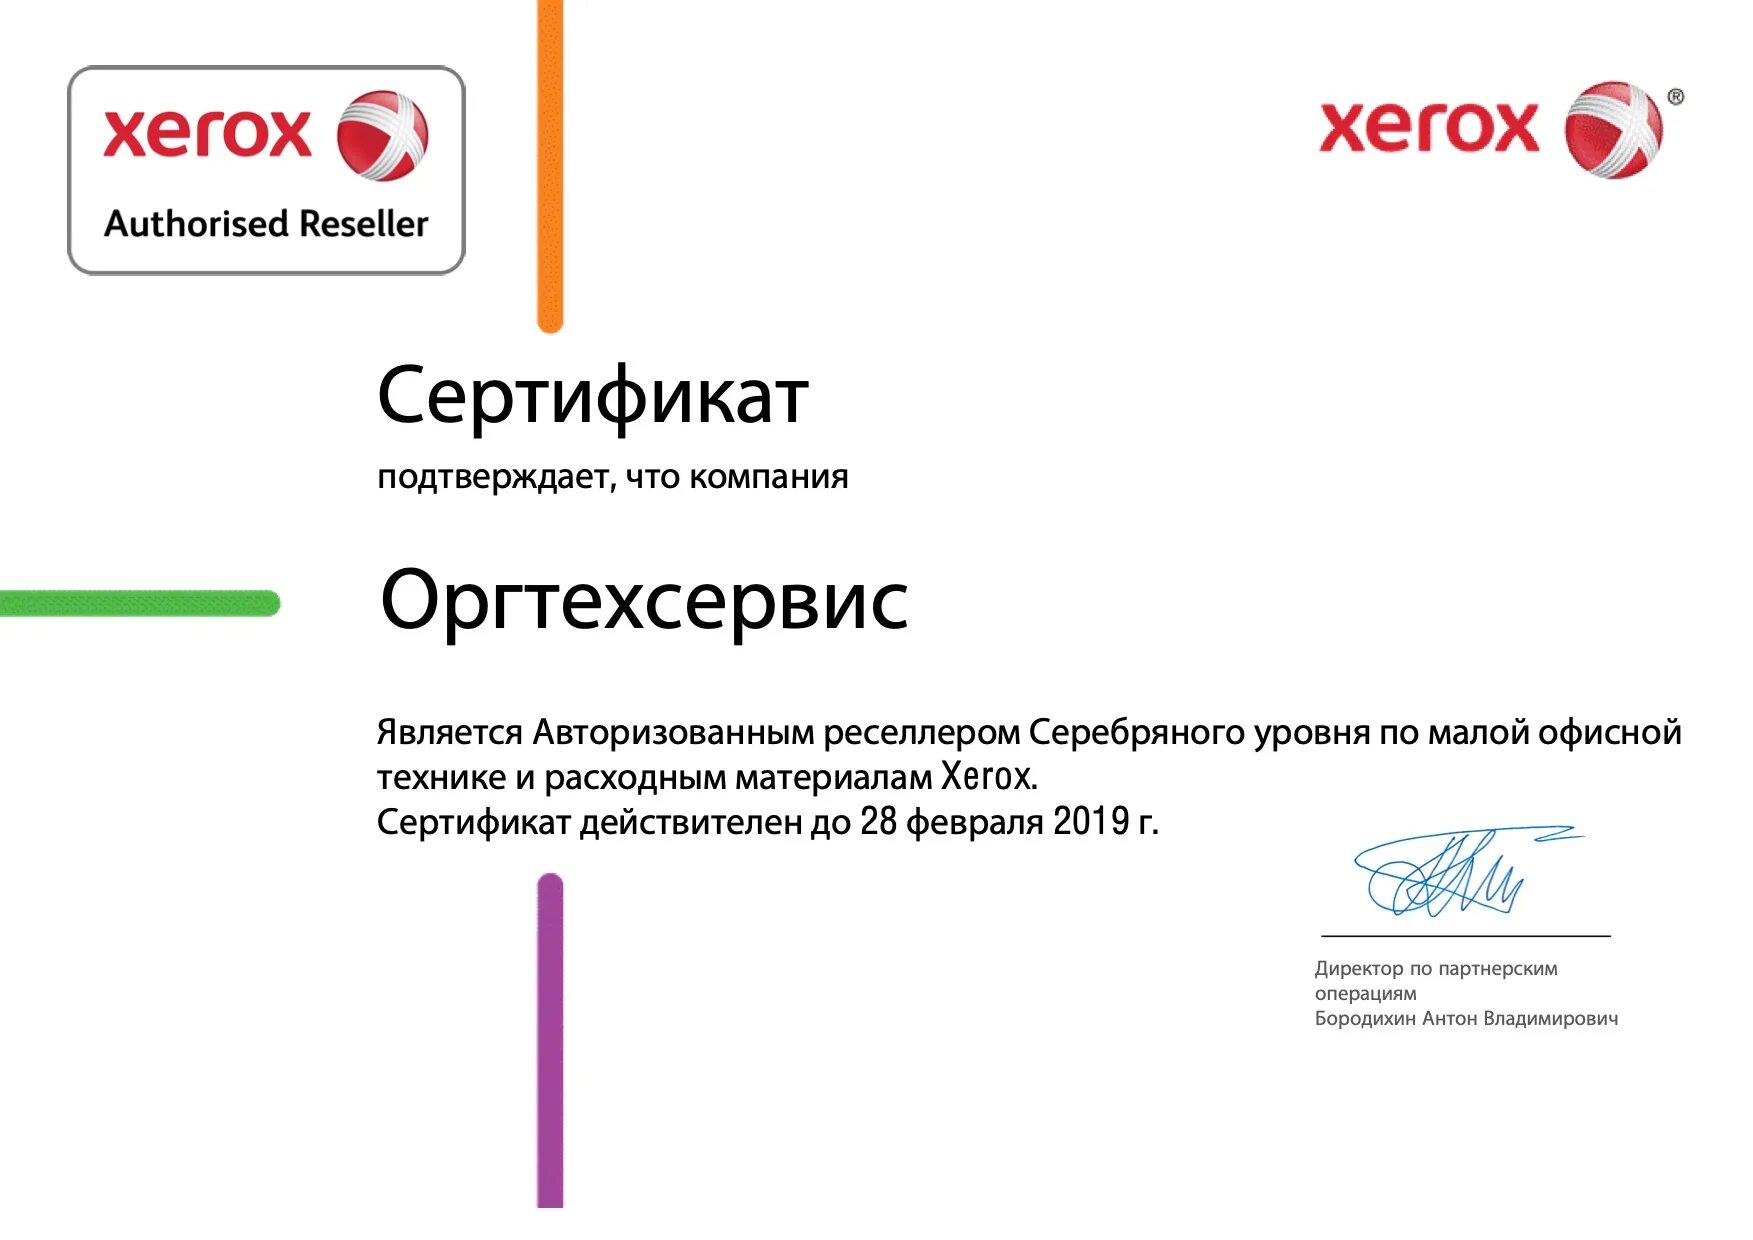 Сертификат Xerox. OKI сертификат. Ксерокс подтверждено. Оргтехсервис. Оргтехсервис майкоп личный